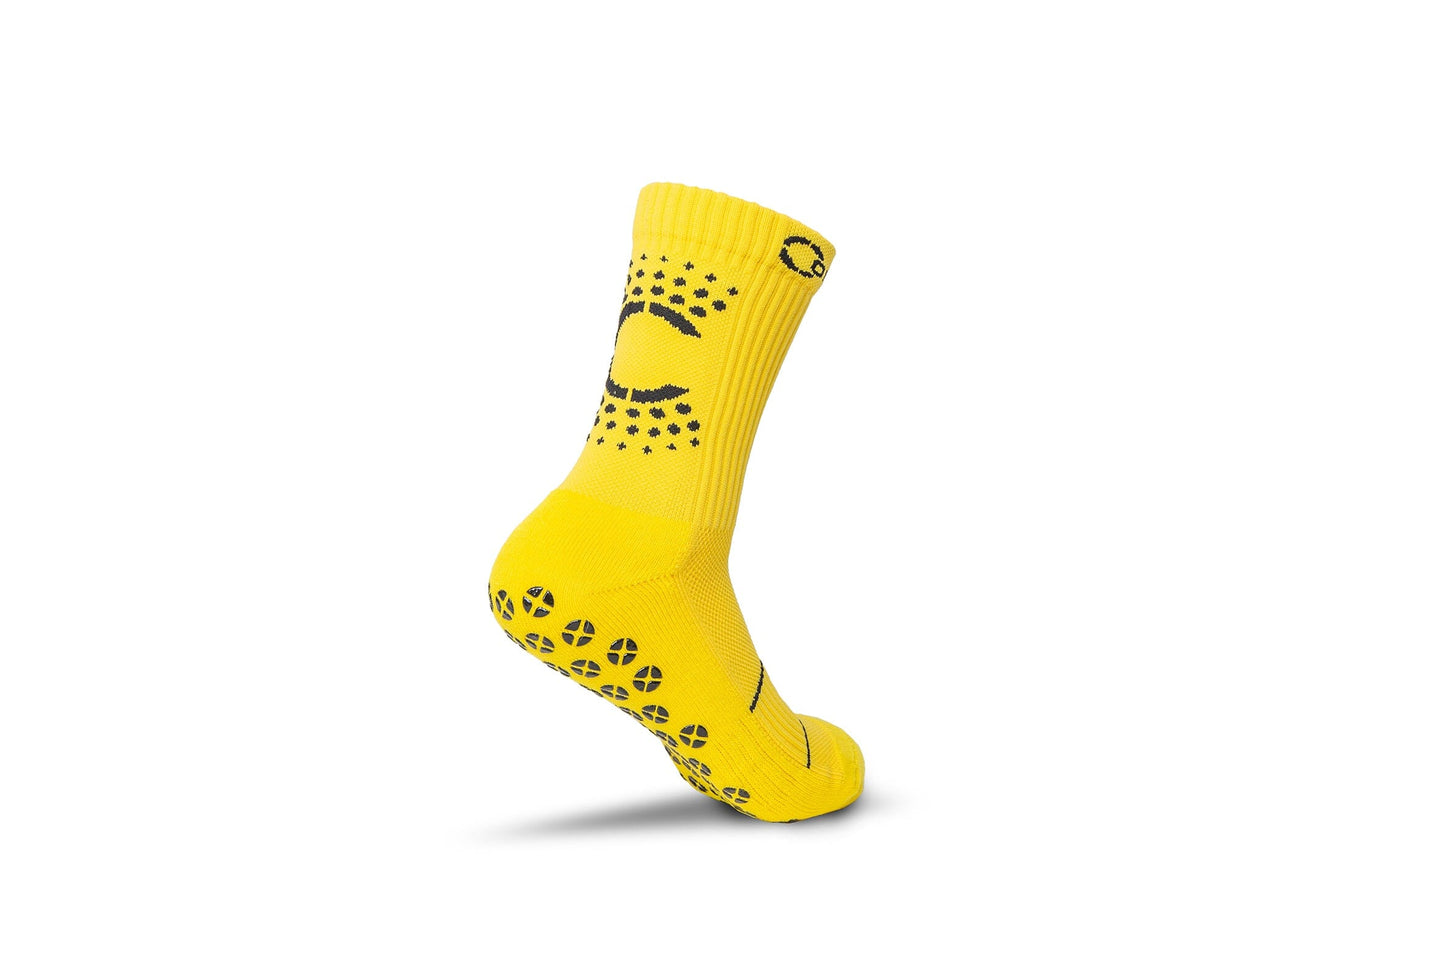 Control Sox 2.0 - Yellow Grip Socks Control Sox 